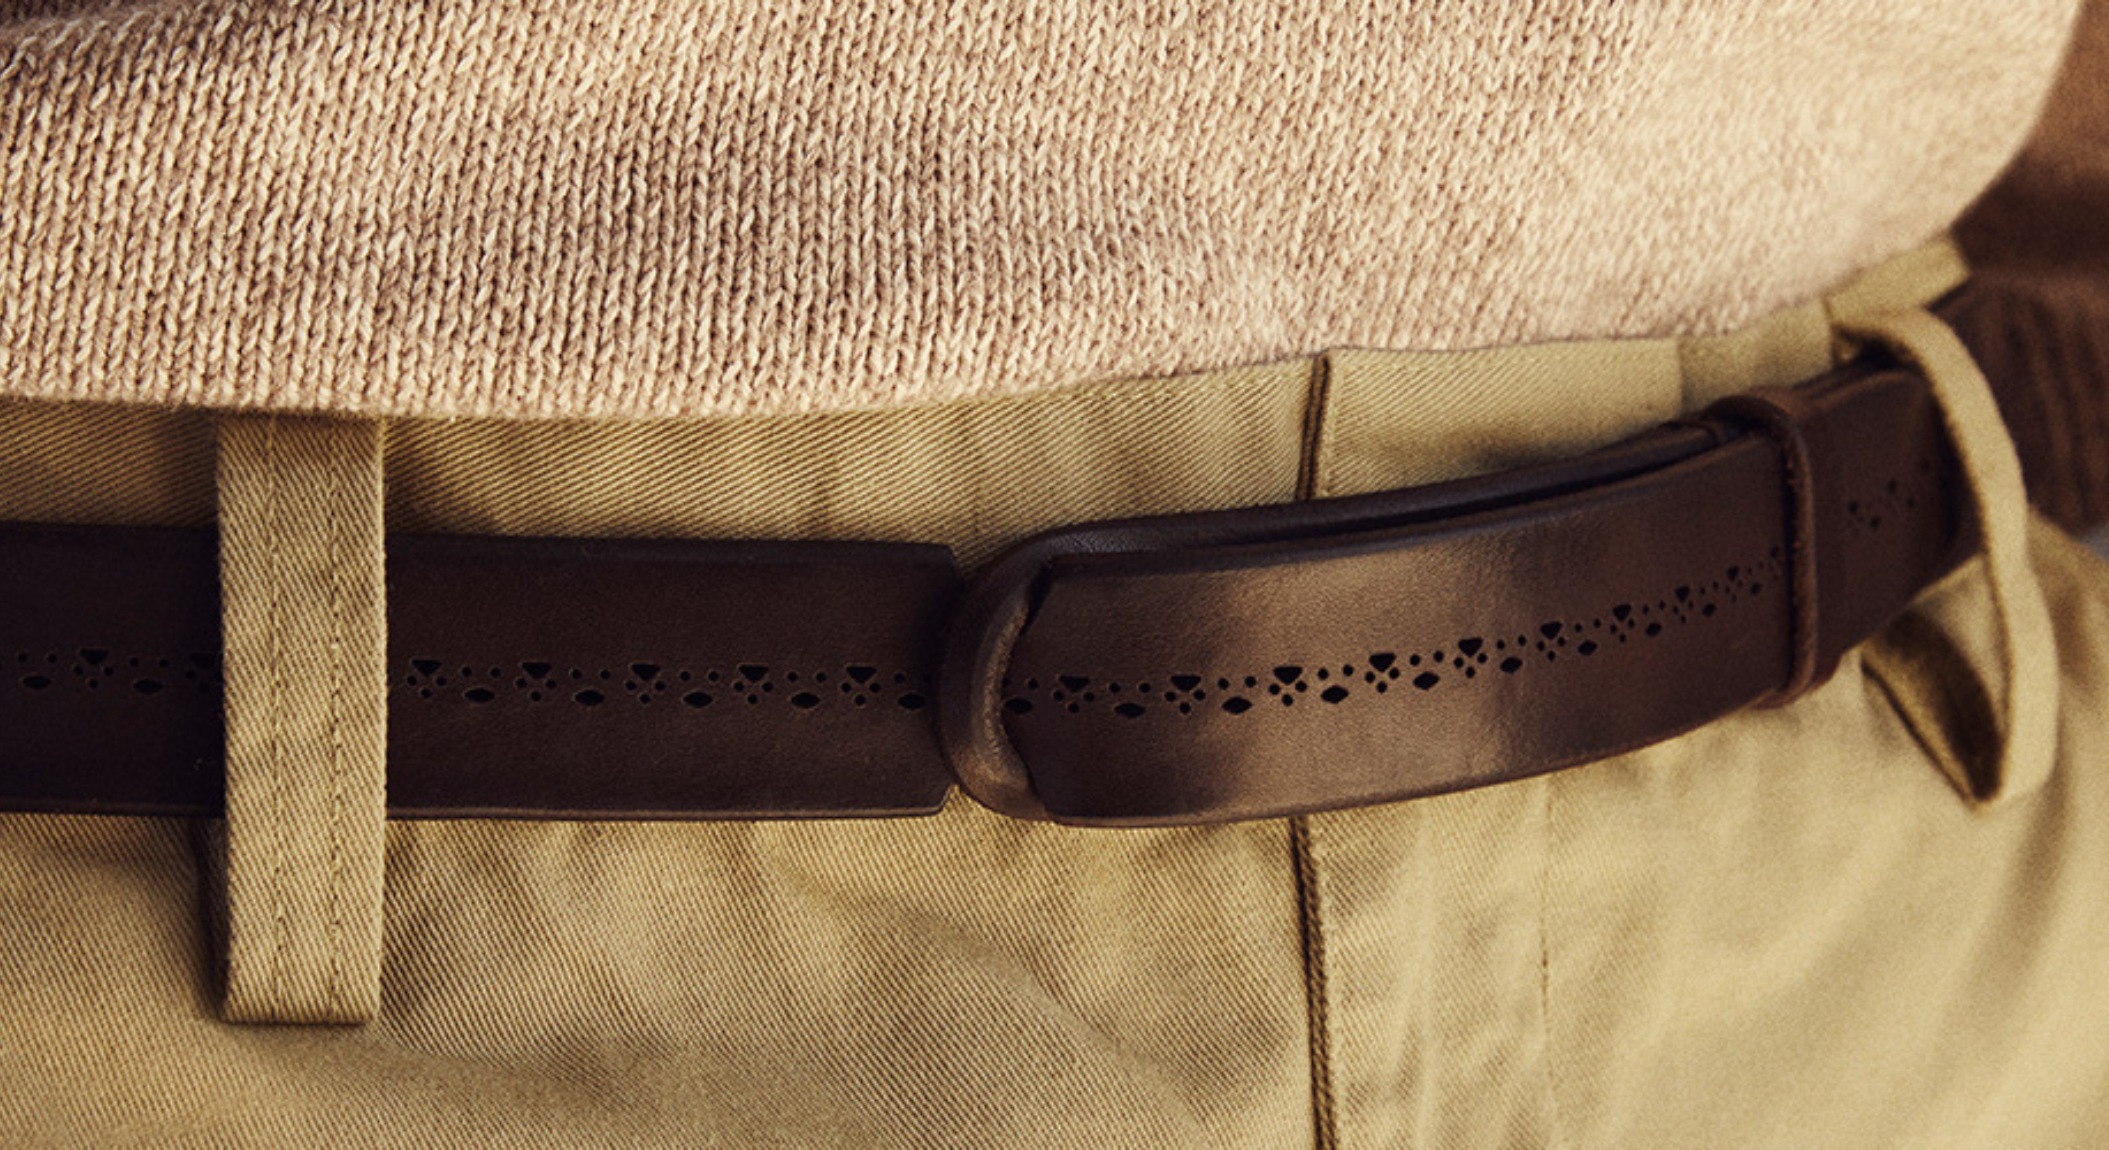 Orciani è un brand di cinture in pelle artigianali sito a Fano. Ha brevettato la cintura No Buckle